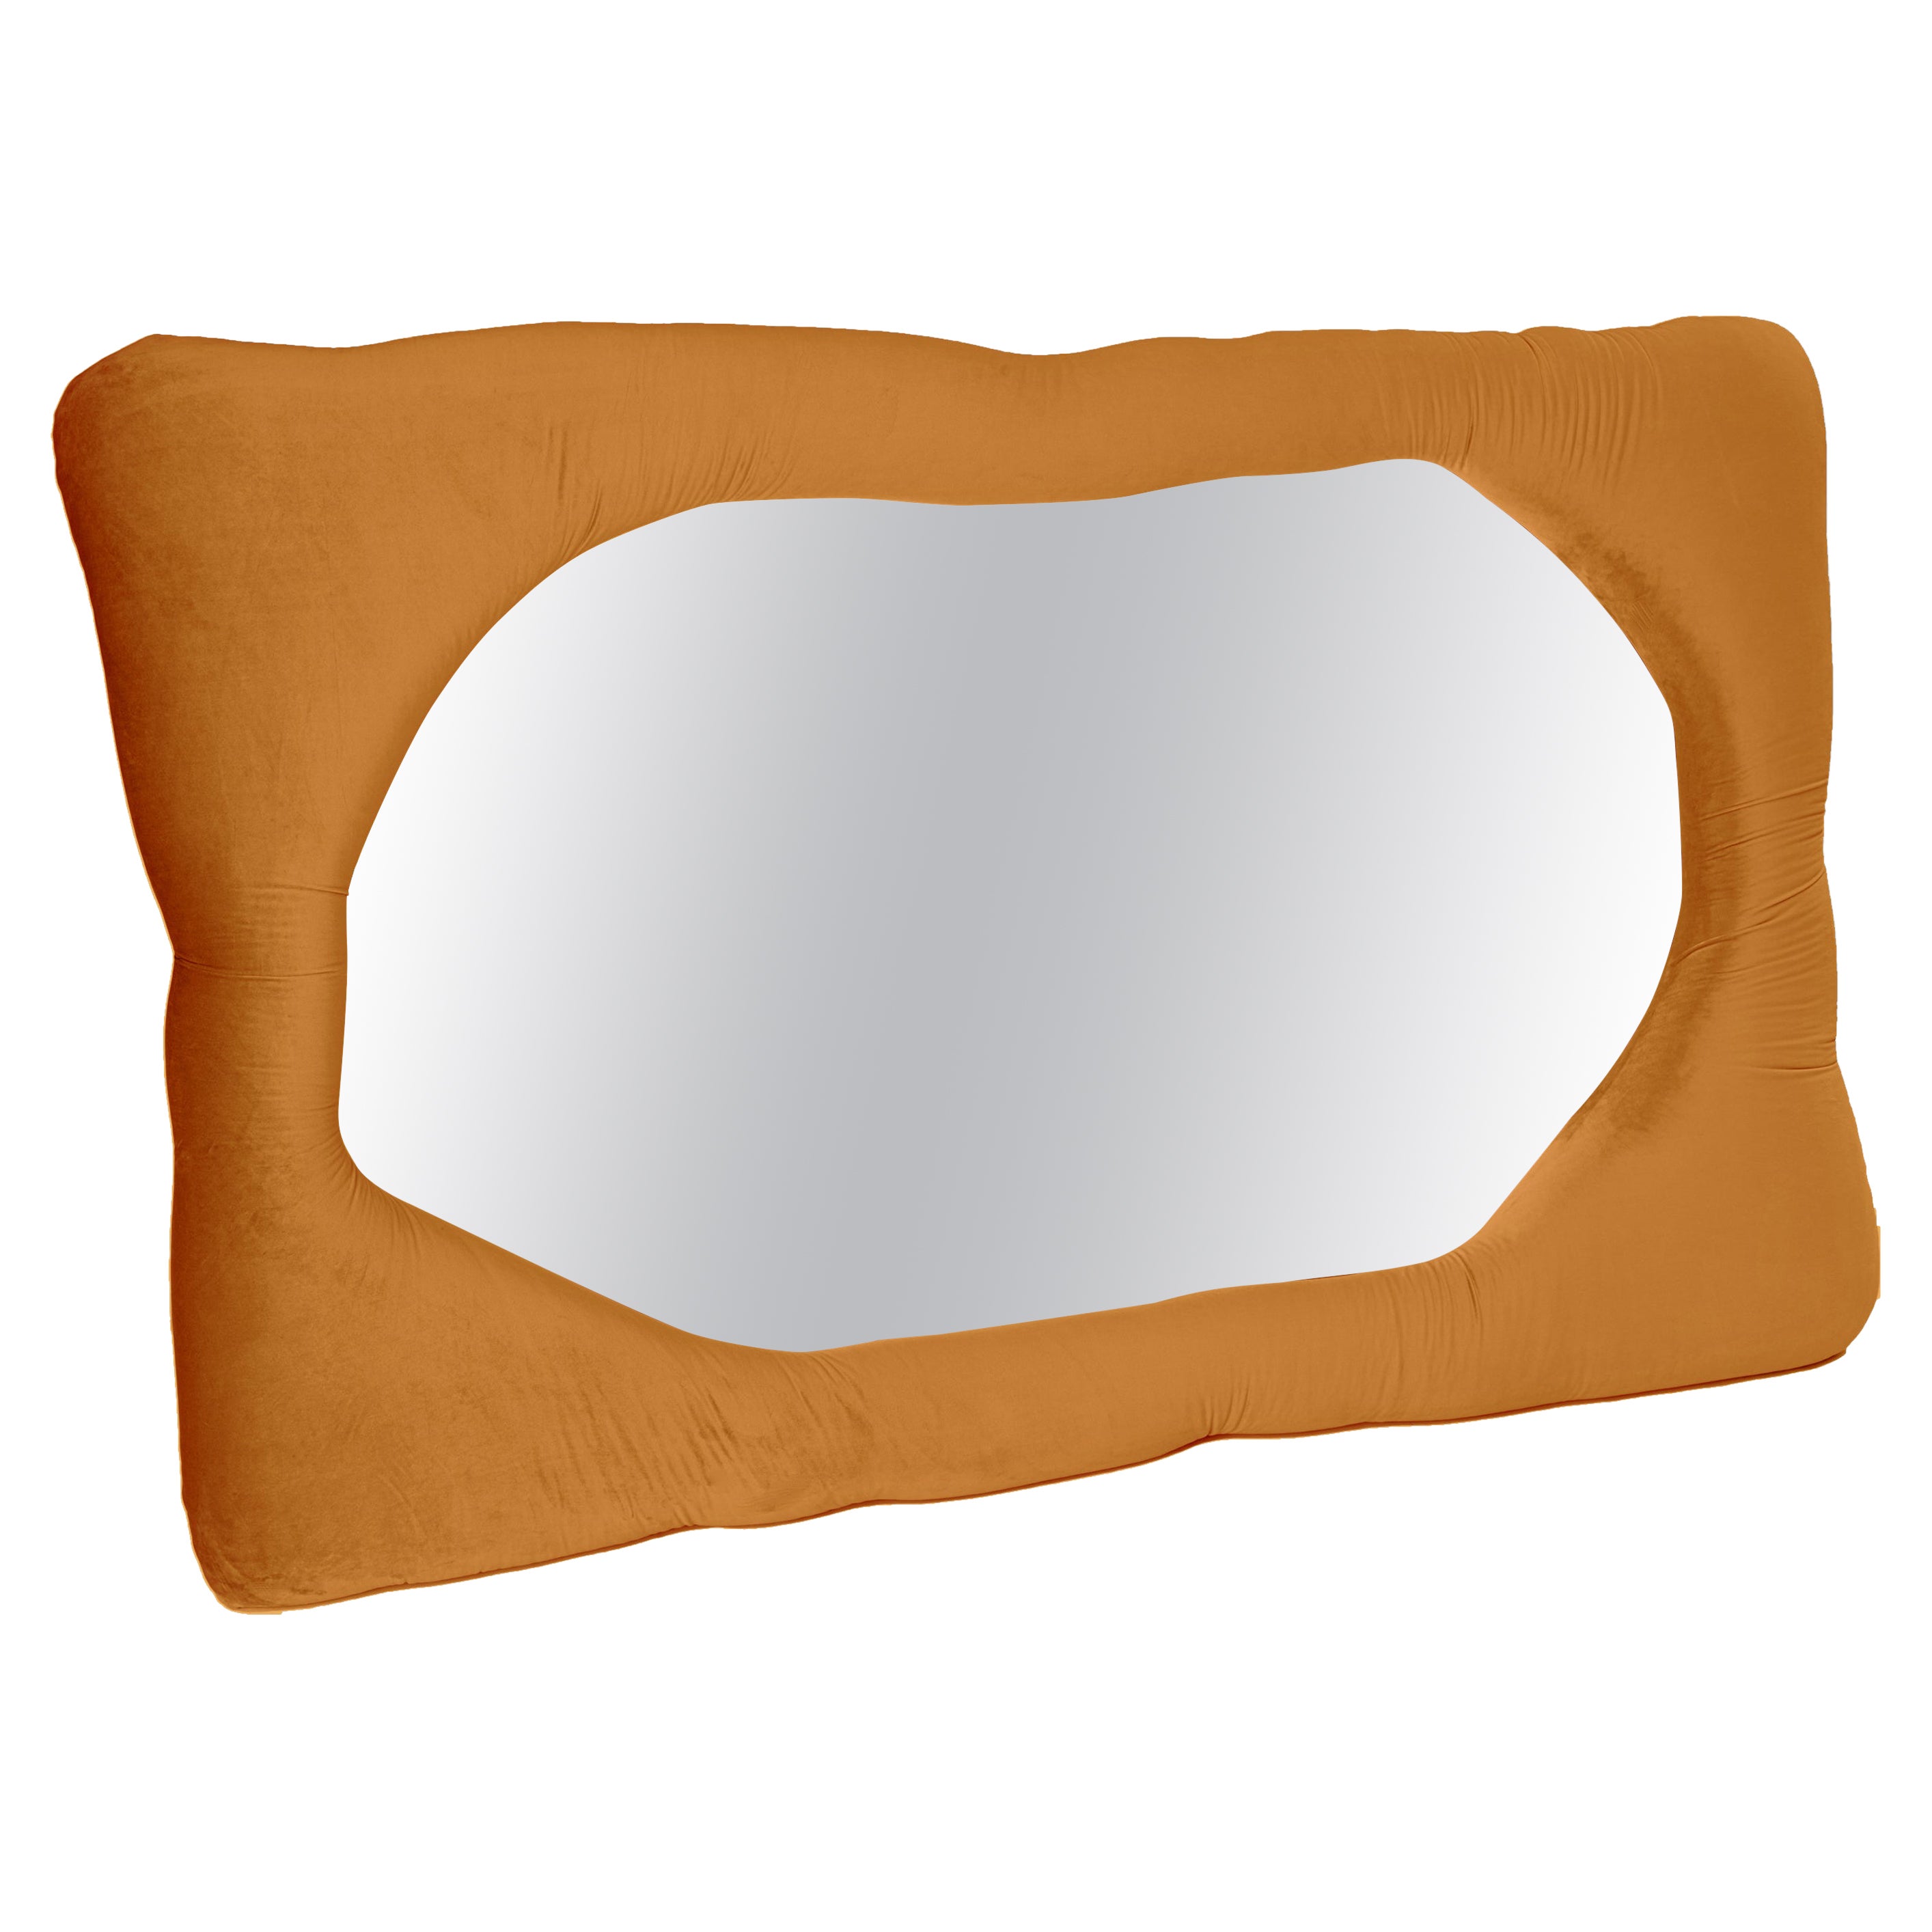 Velvet Biomorphic Mirror in Orange by Brandi Howe, REP by Tuleste Factory